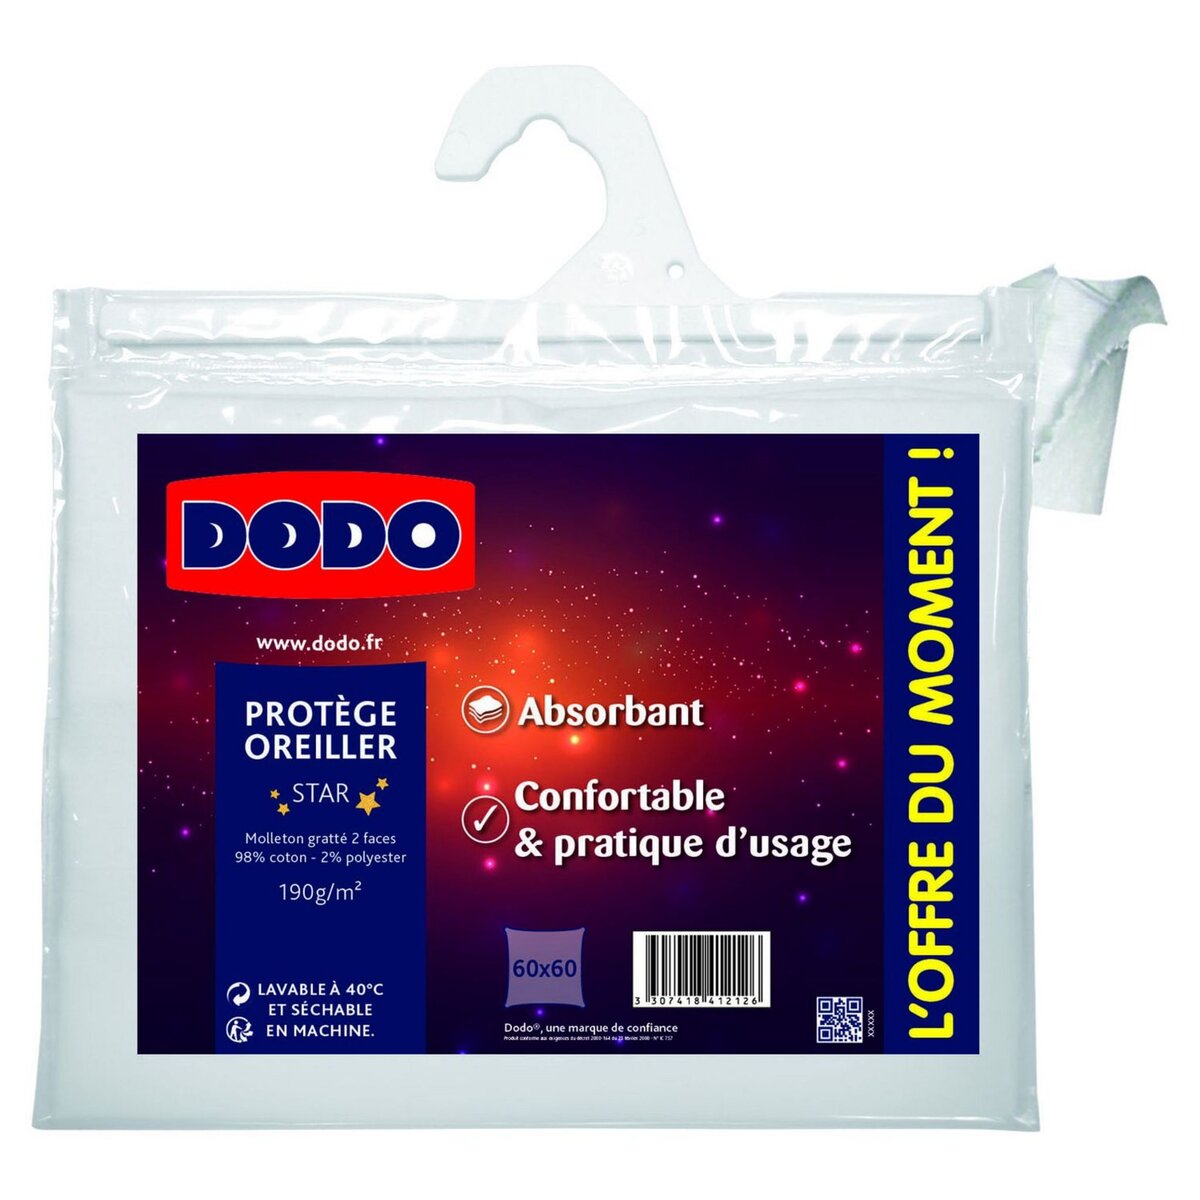 DODO Protège oreiller absorbant en polycoton STAR